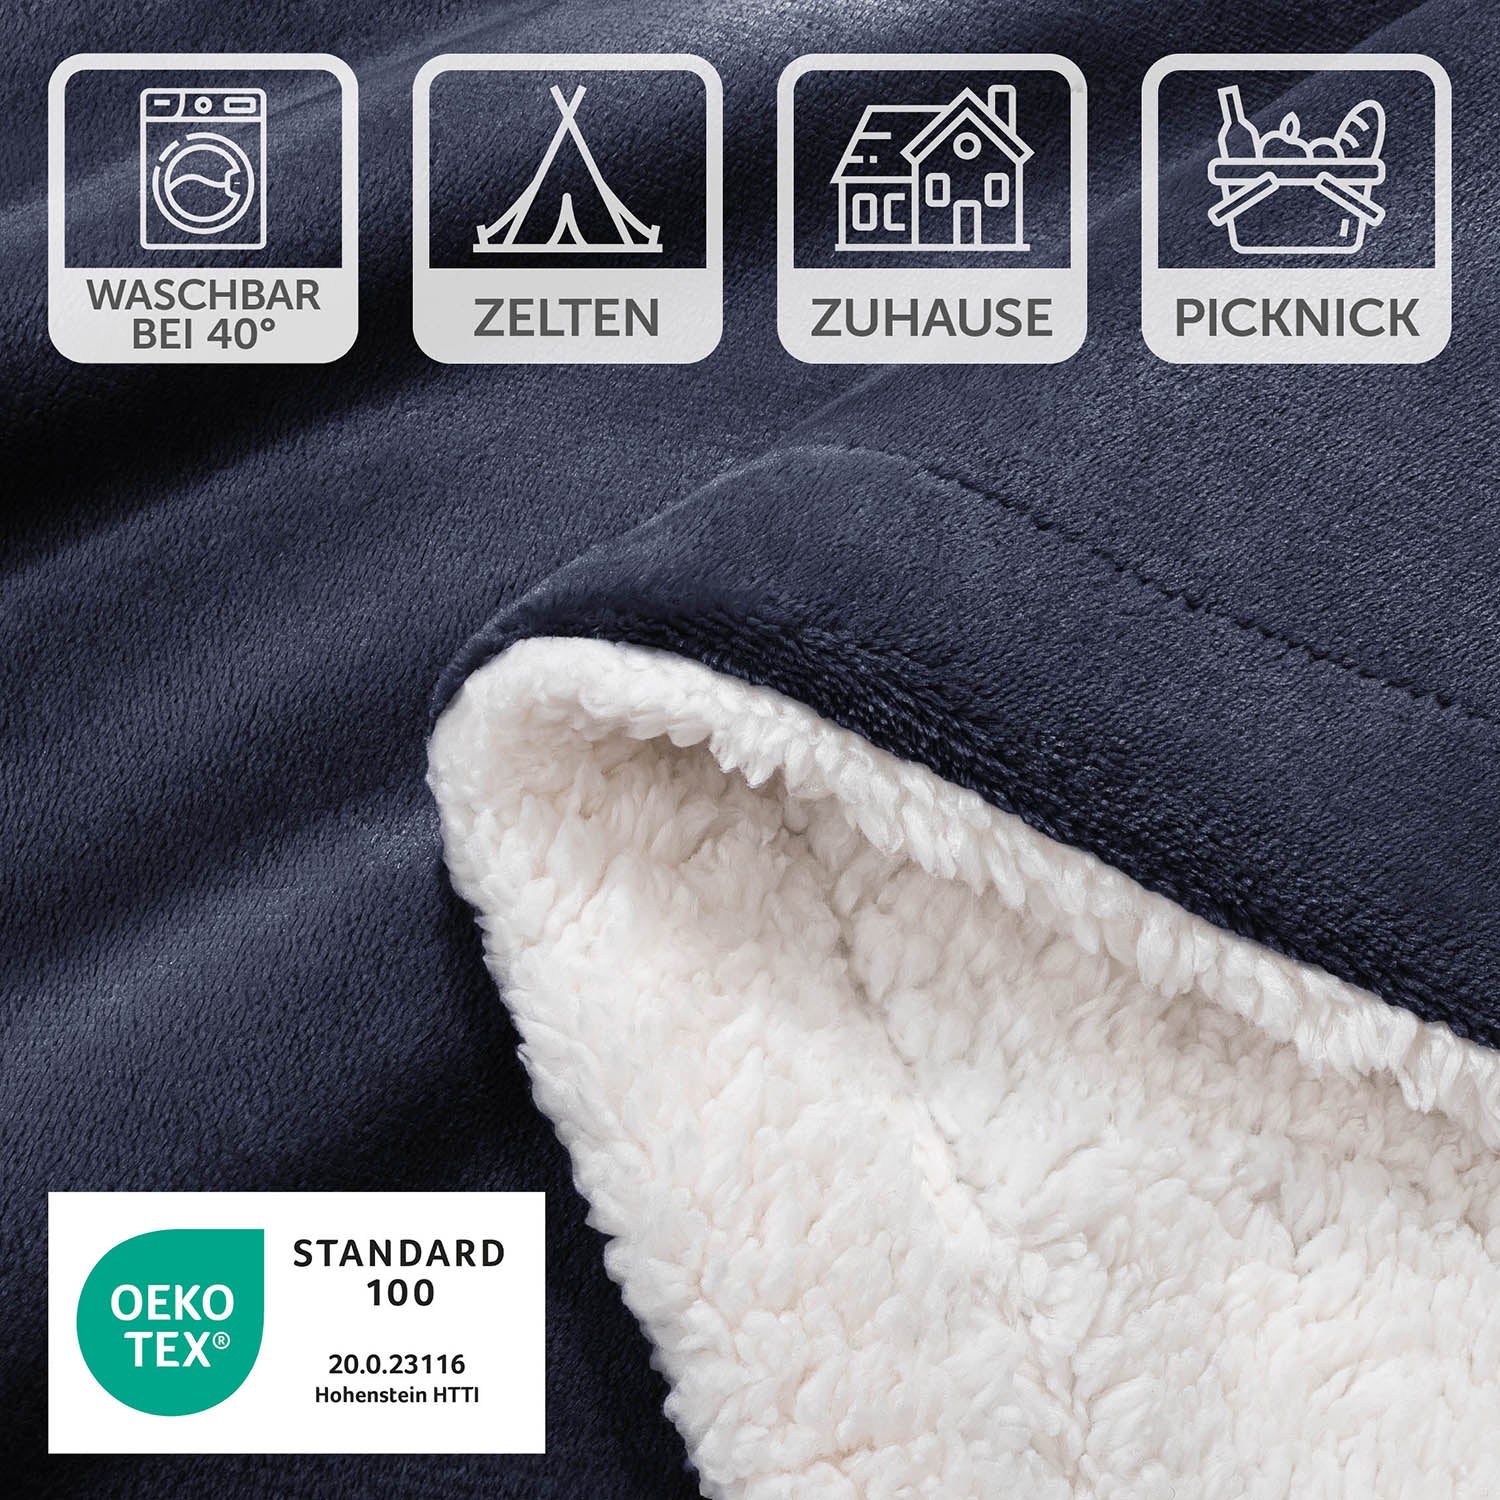 Detailansicht der dunkelblauen Decke mit Pflegesymbolen und OEKO-TEX Standard 100 Siegel, waschbar bei 40 Grad, geeignet für Zelten, Zuhause und Picknick.